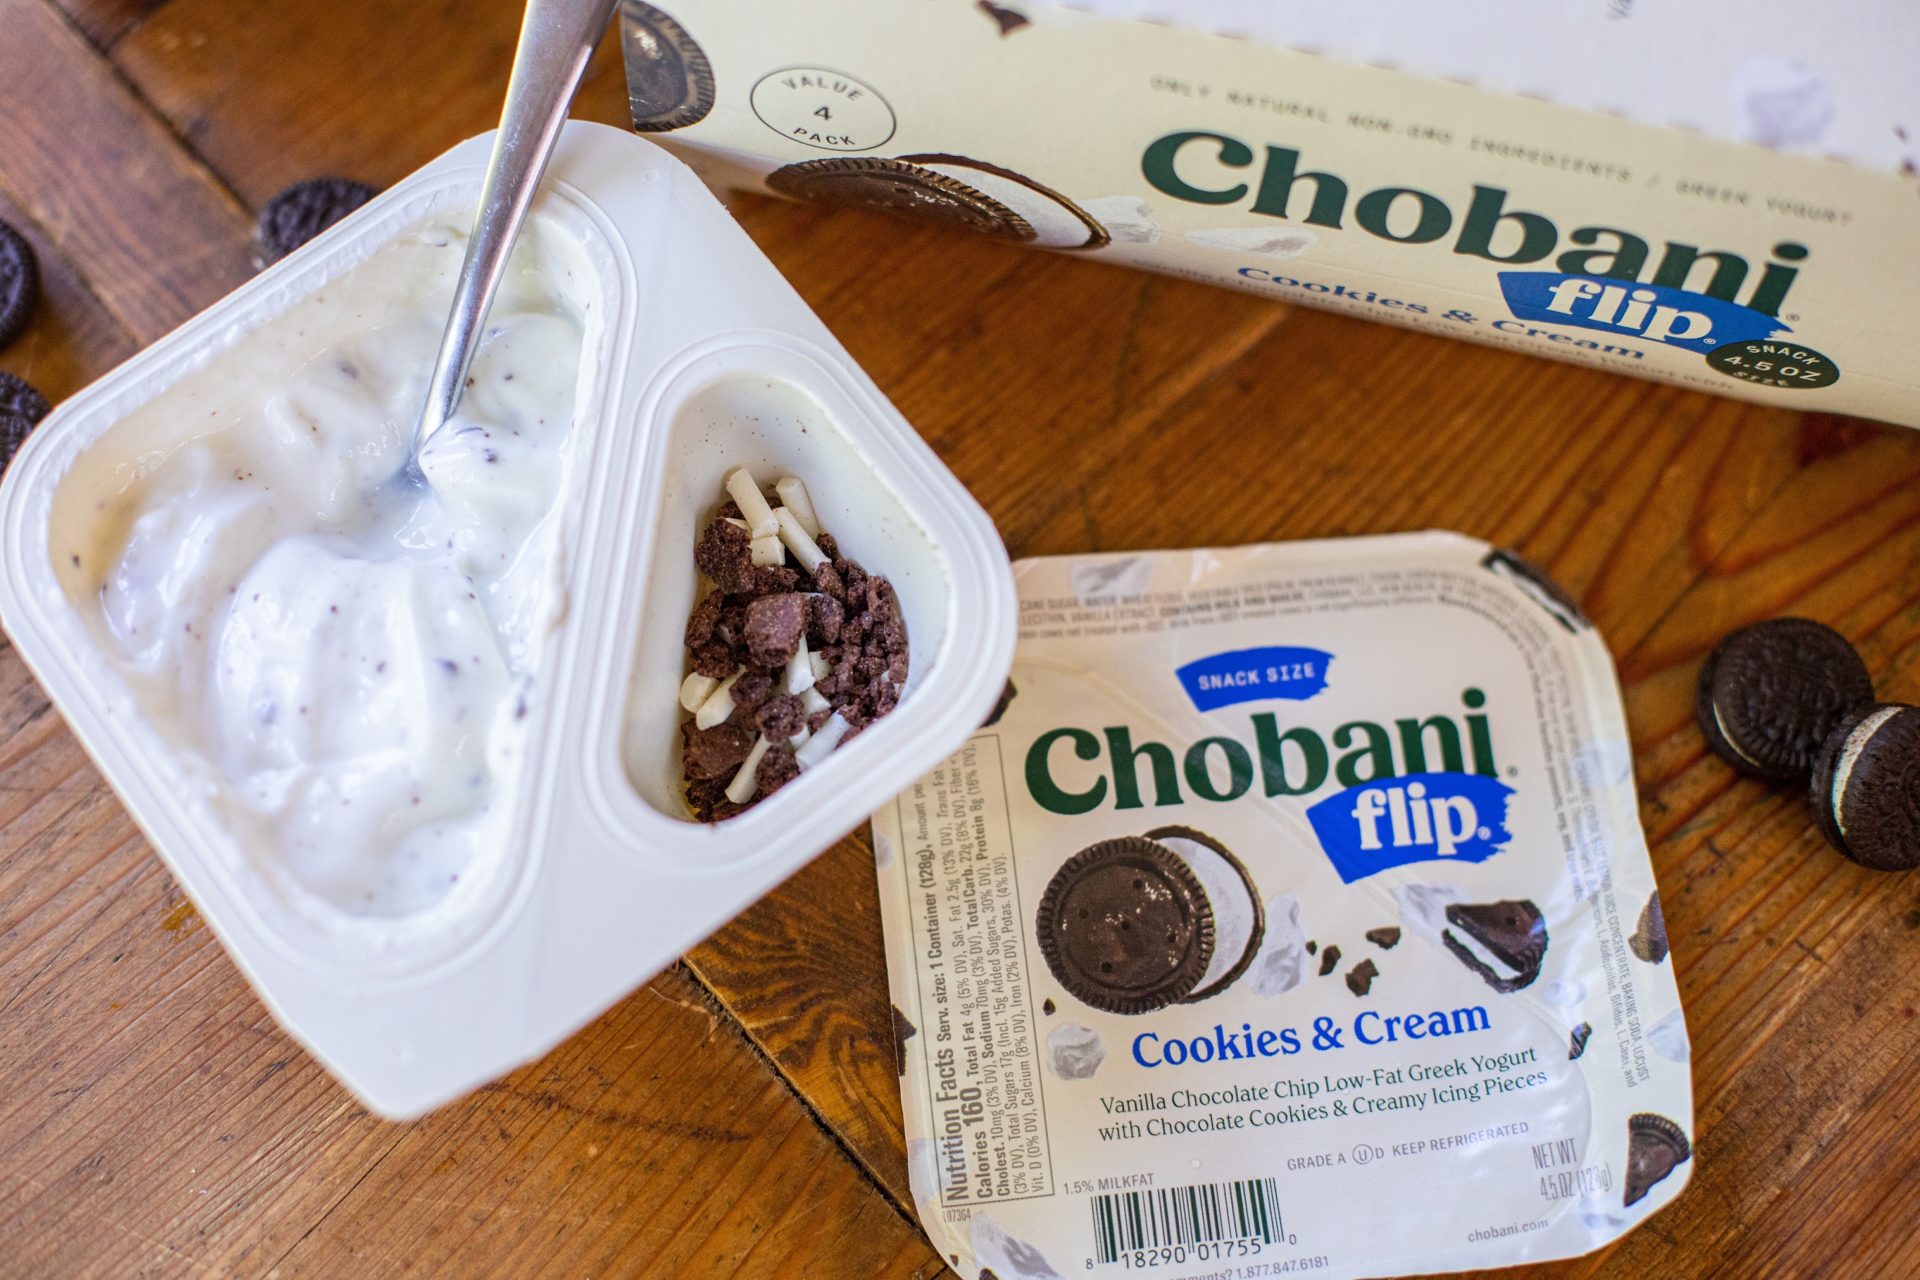 Get Chobani Flip Yogurt As Low As 85¢ At Kroger